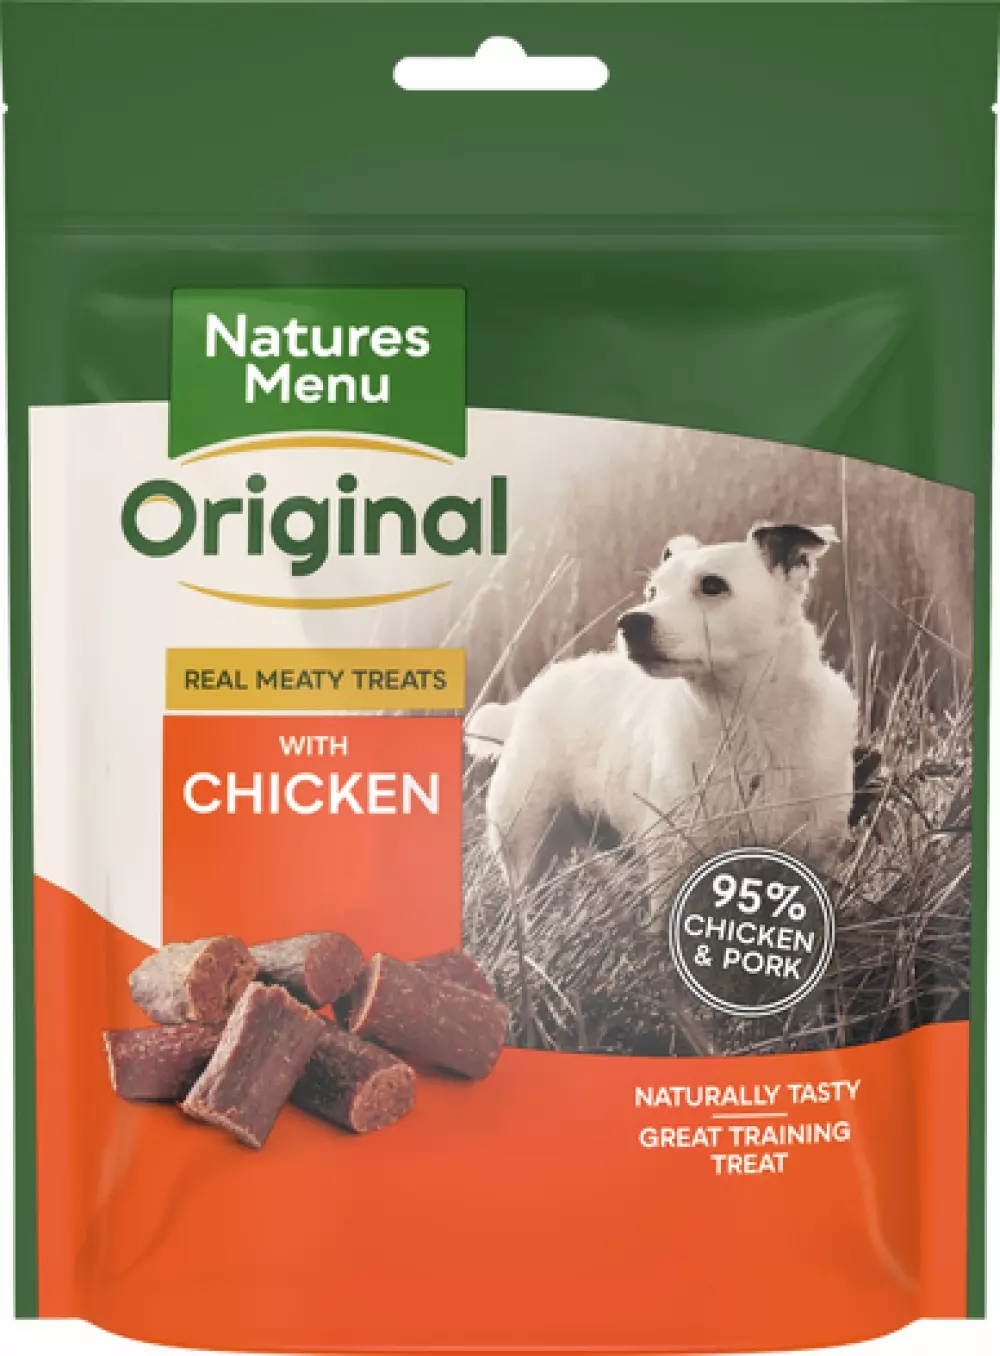 Natures Menu til godbitene , Natures Menu Snacks Kylling 120g, Hundeutstyr, Hundegodbiter og